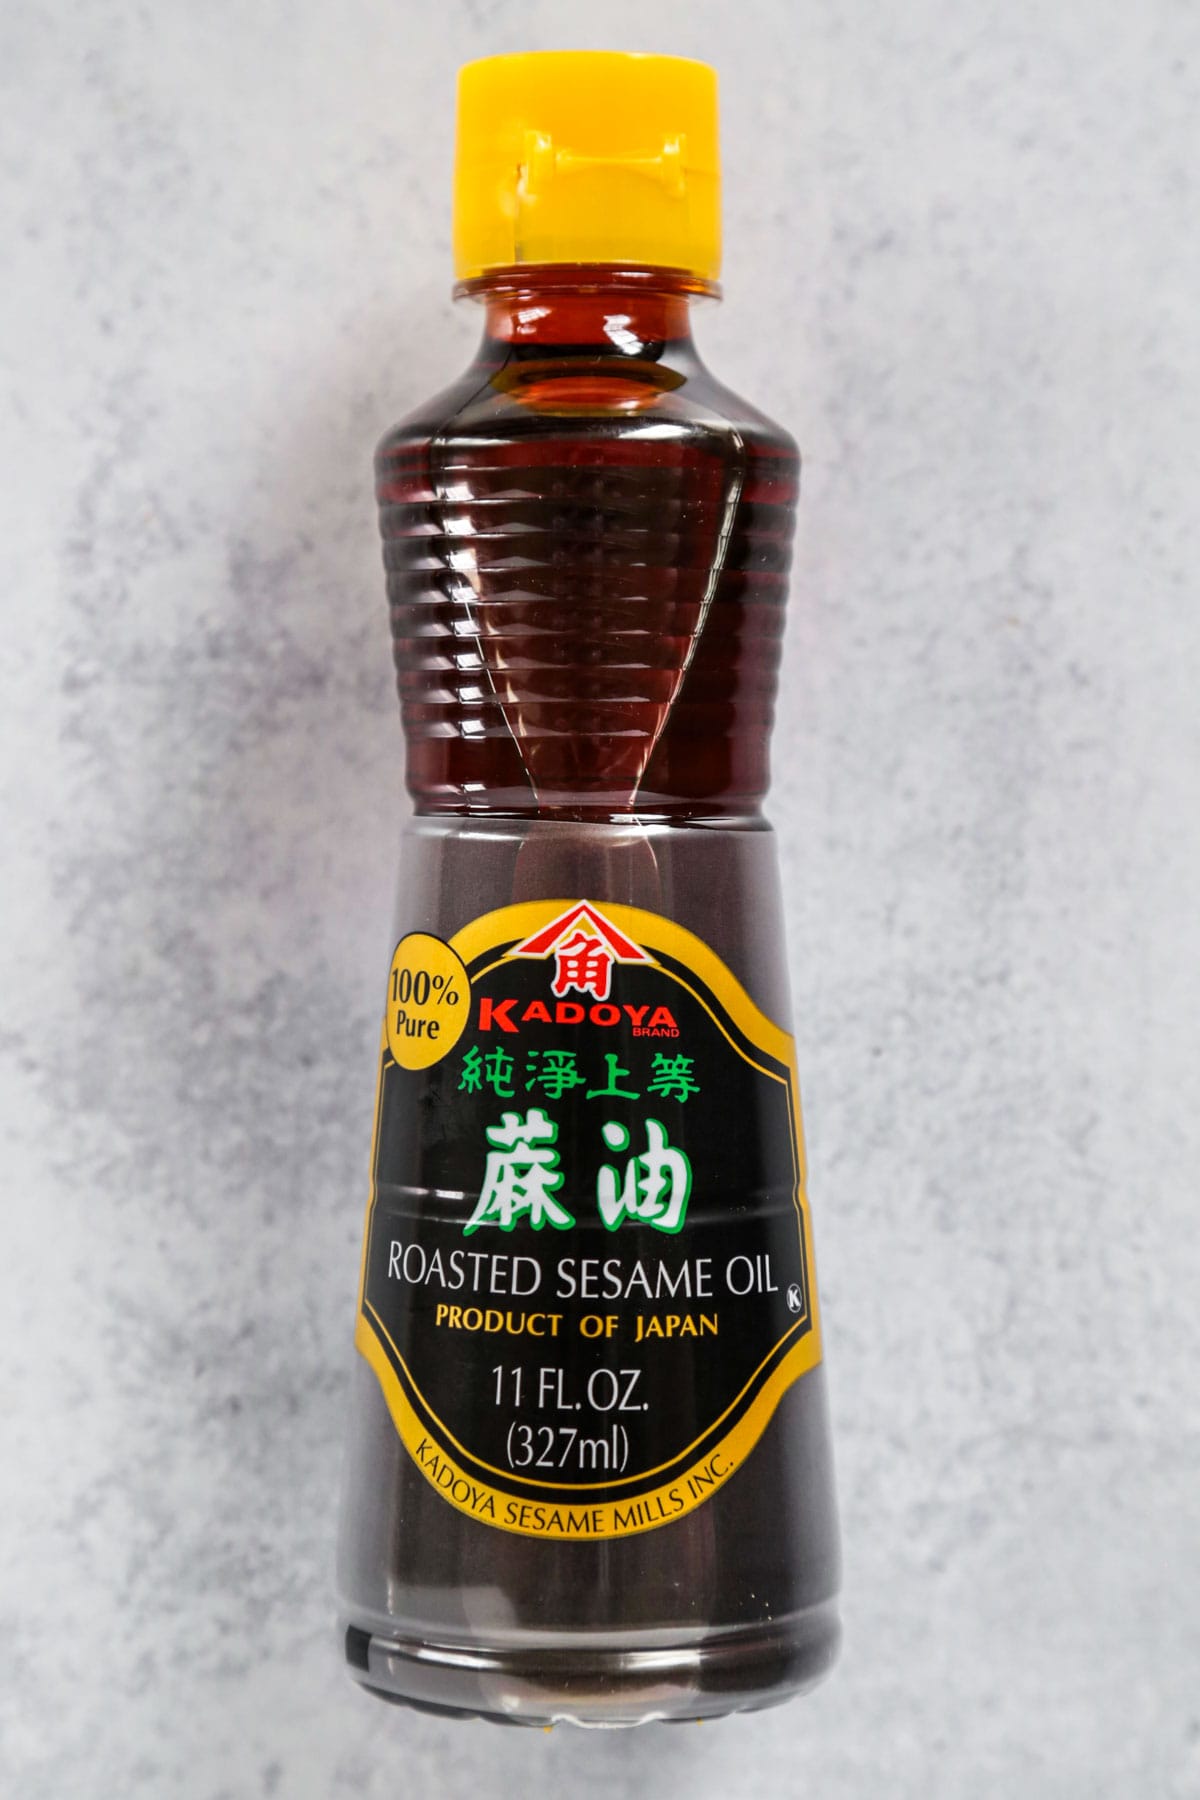 Japanese Sesame oil